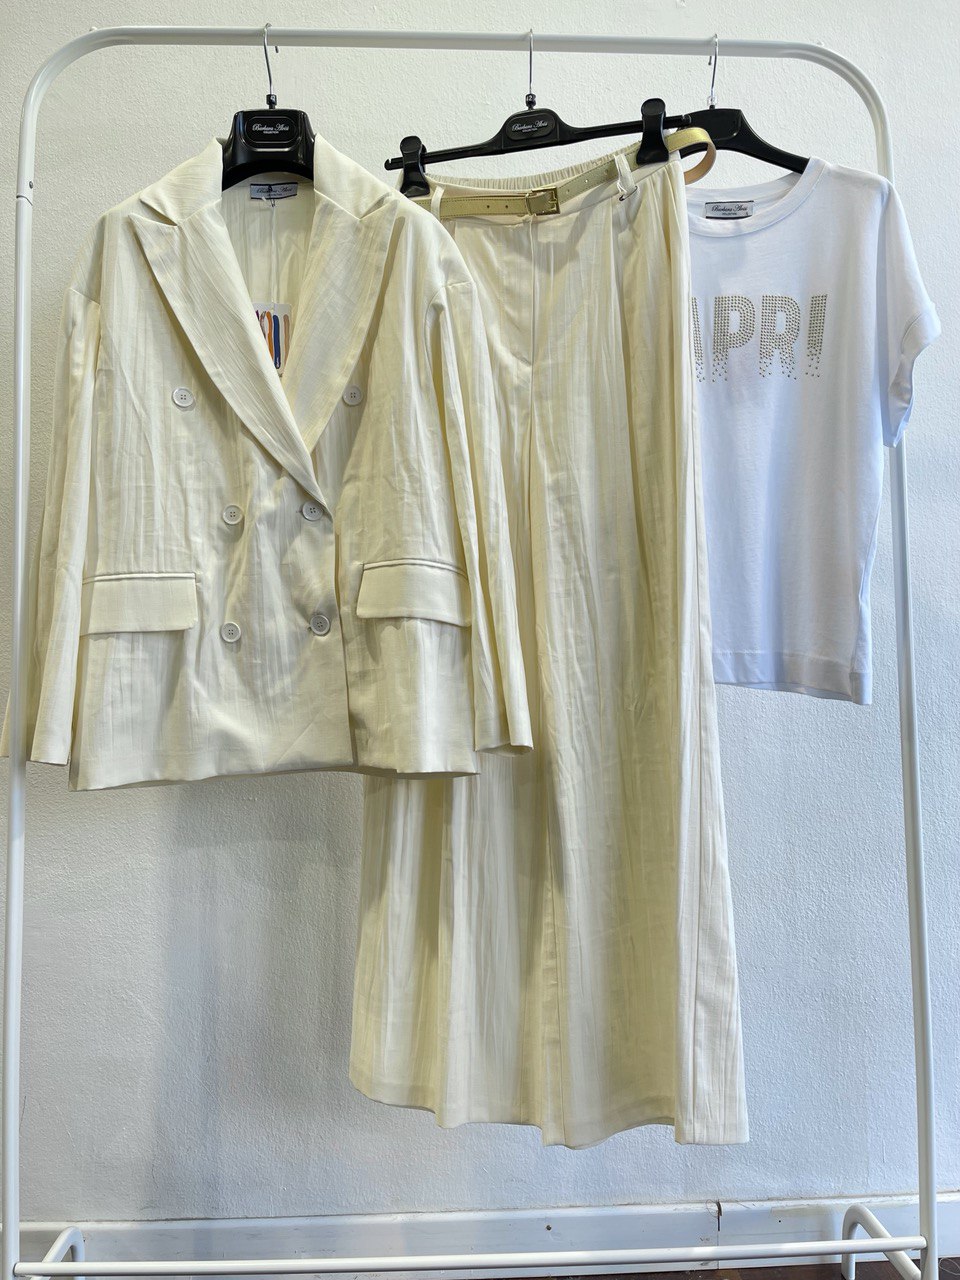 Итальянская одежда, бренд Derwix, арт. 72841075